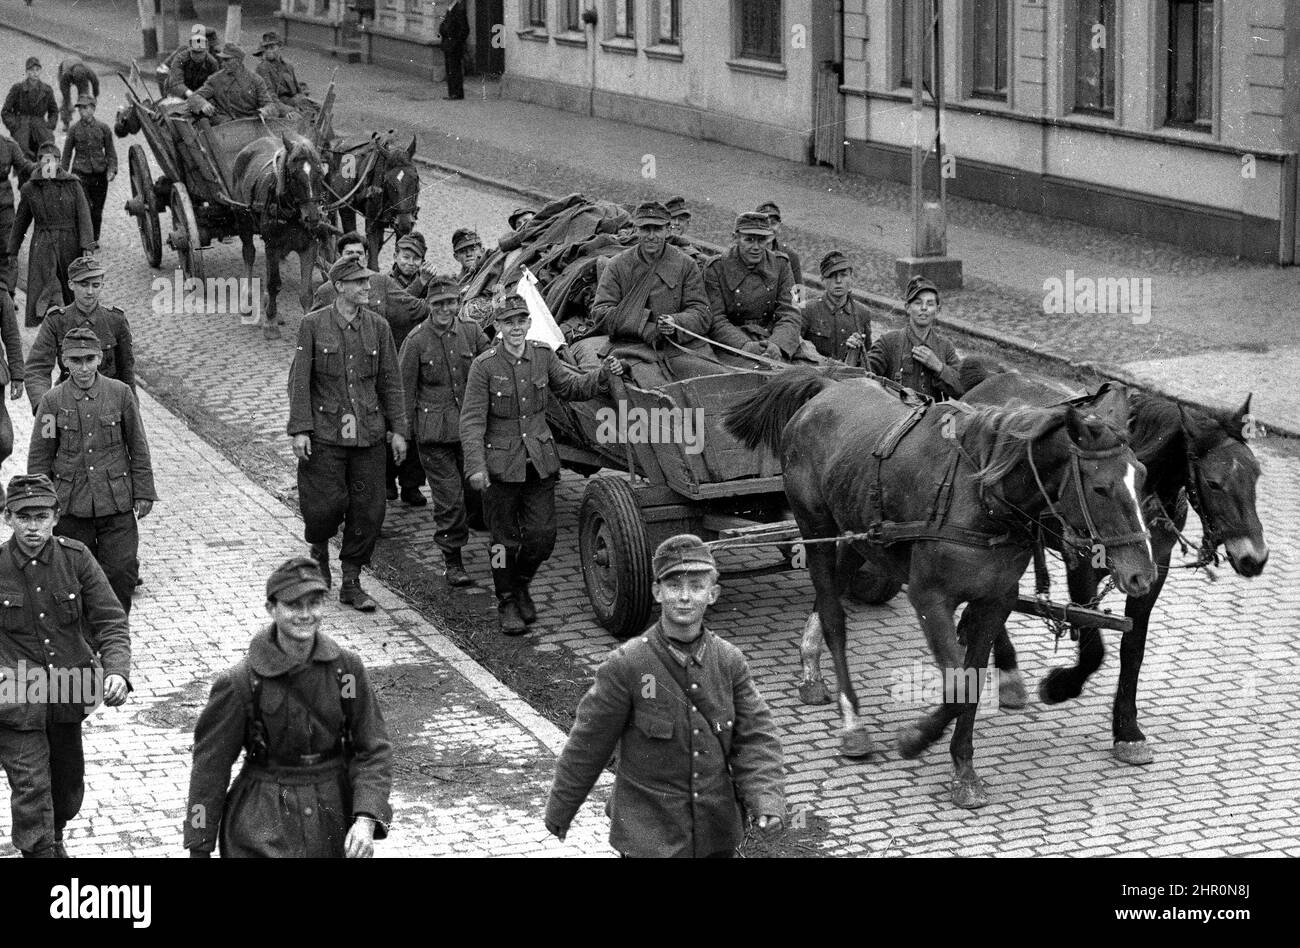 Allemagne Seconde Guerre mondiale 1945. Soldats de l'armée allemande la plupart d'entre eux très jeunes souriant comme ils retournent à la maison défait avec un drapeau blanc de la reddition sur leur cheval et chariot. Des drapeaux blancs peuvent également être vus drapés de certains des buidlings. Banque D'Images